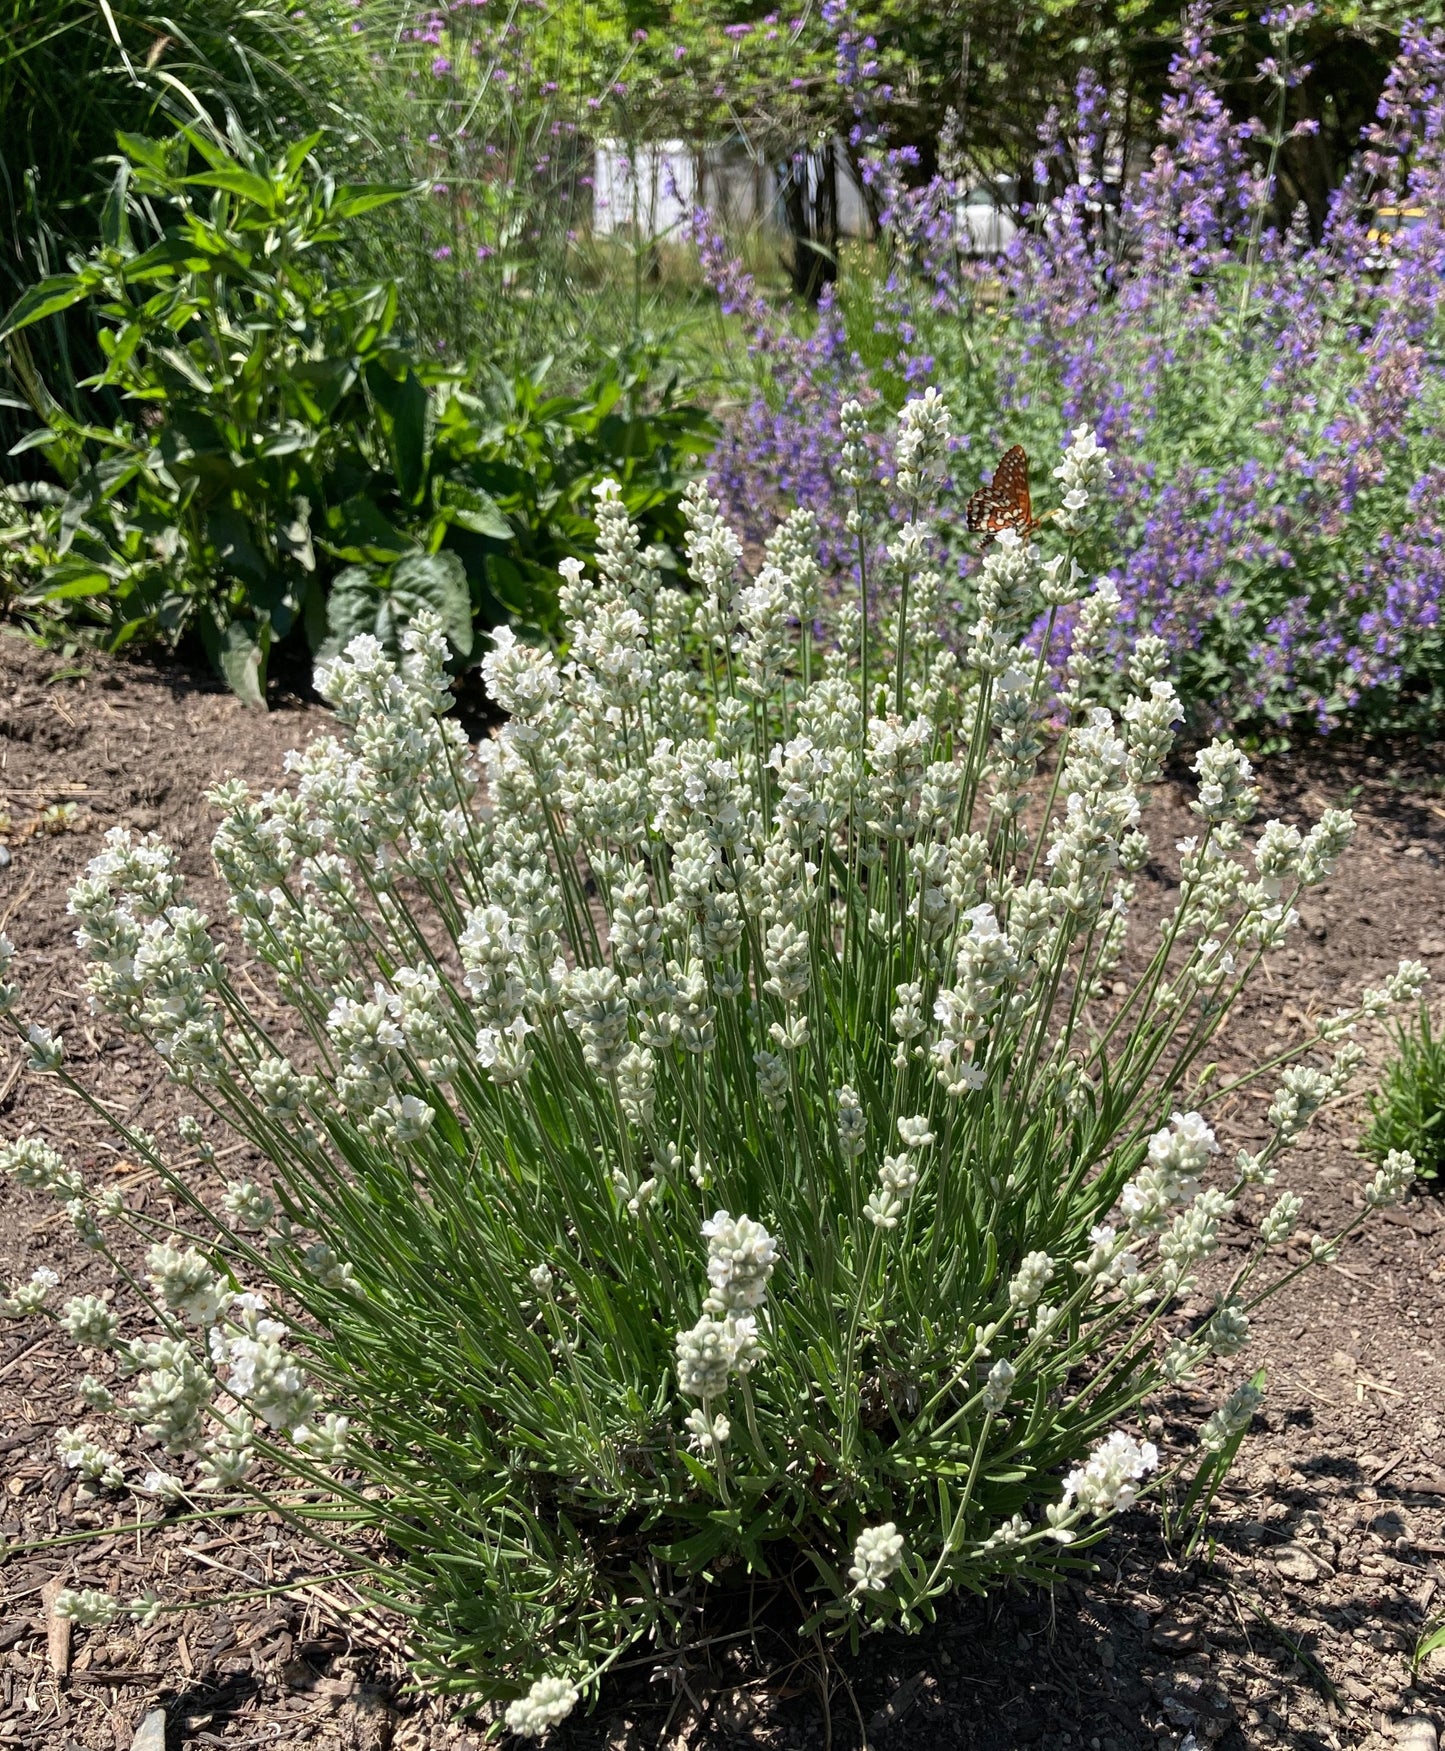 Nana Alba white lavender in the ground